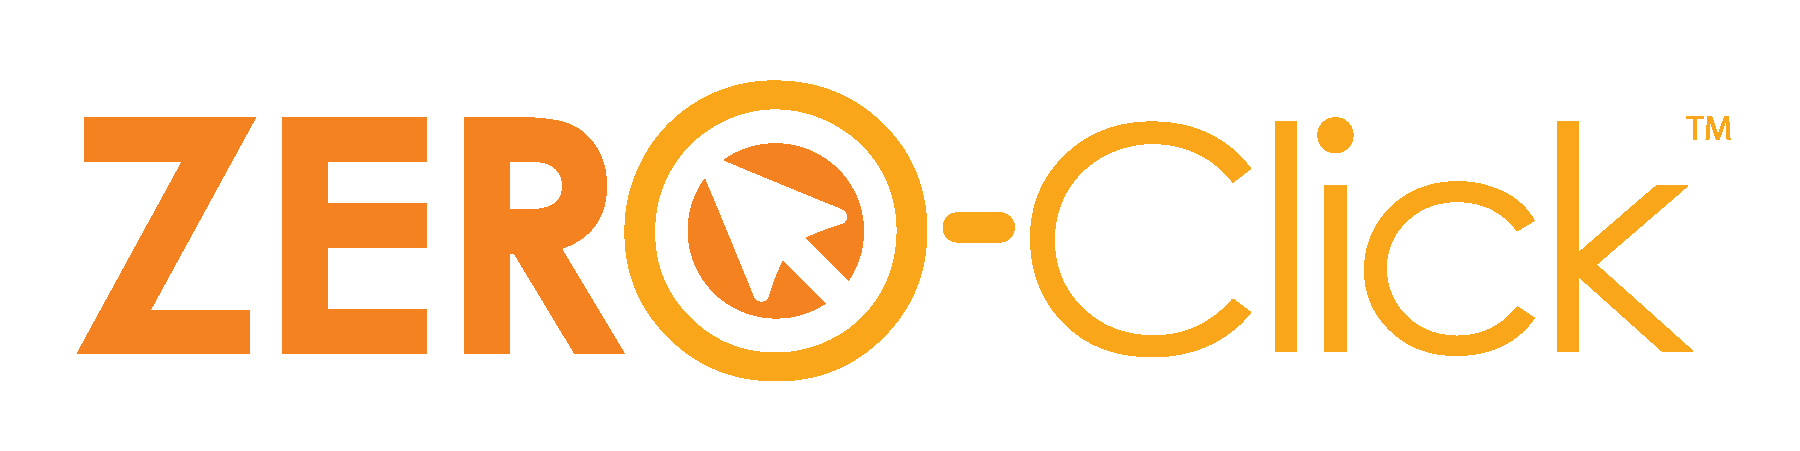 Clickfree Logo photo - 1